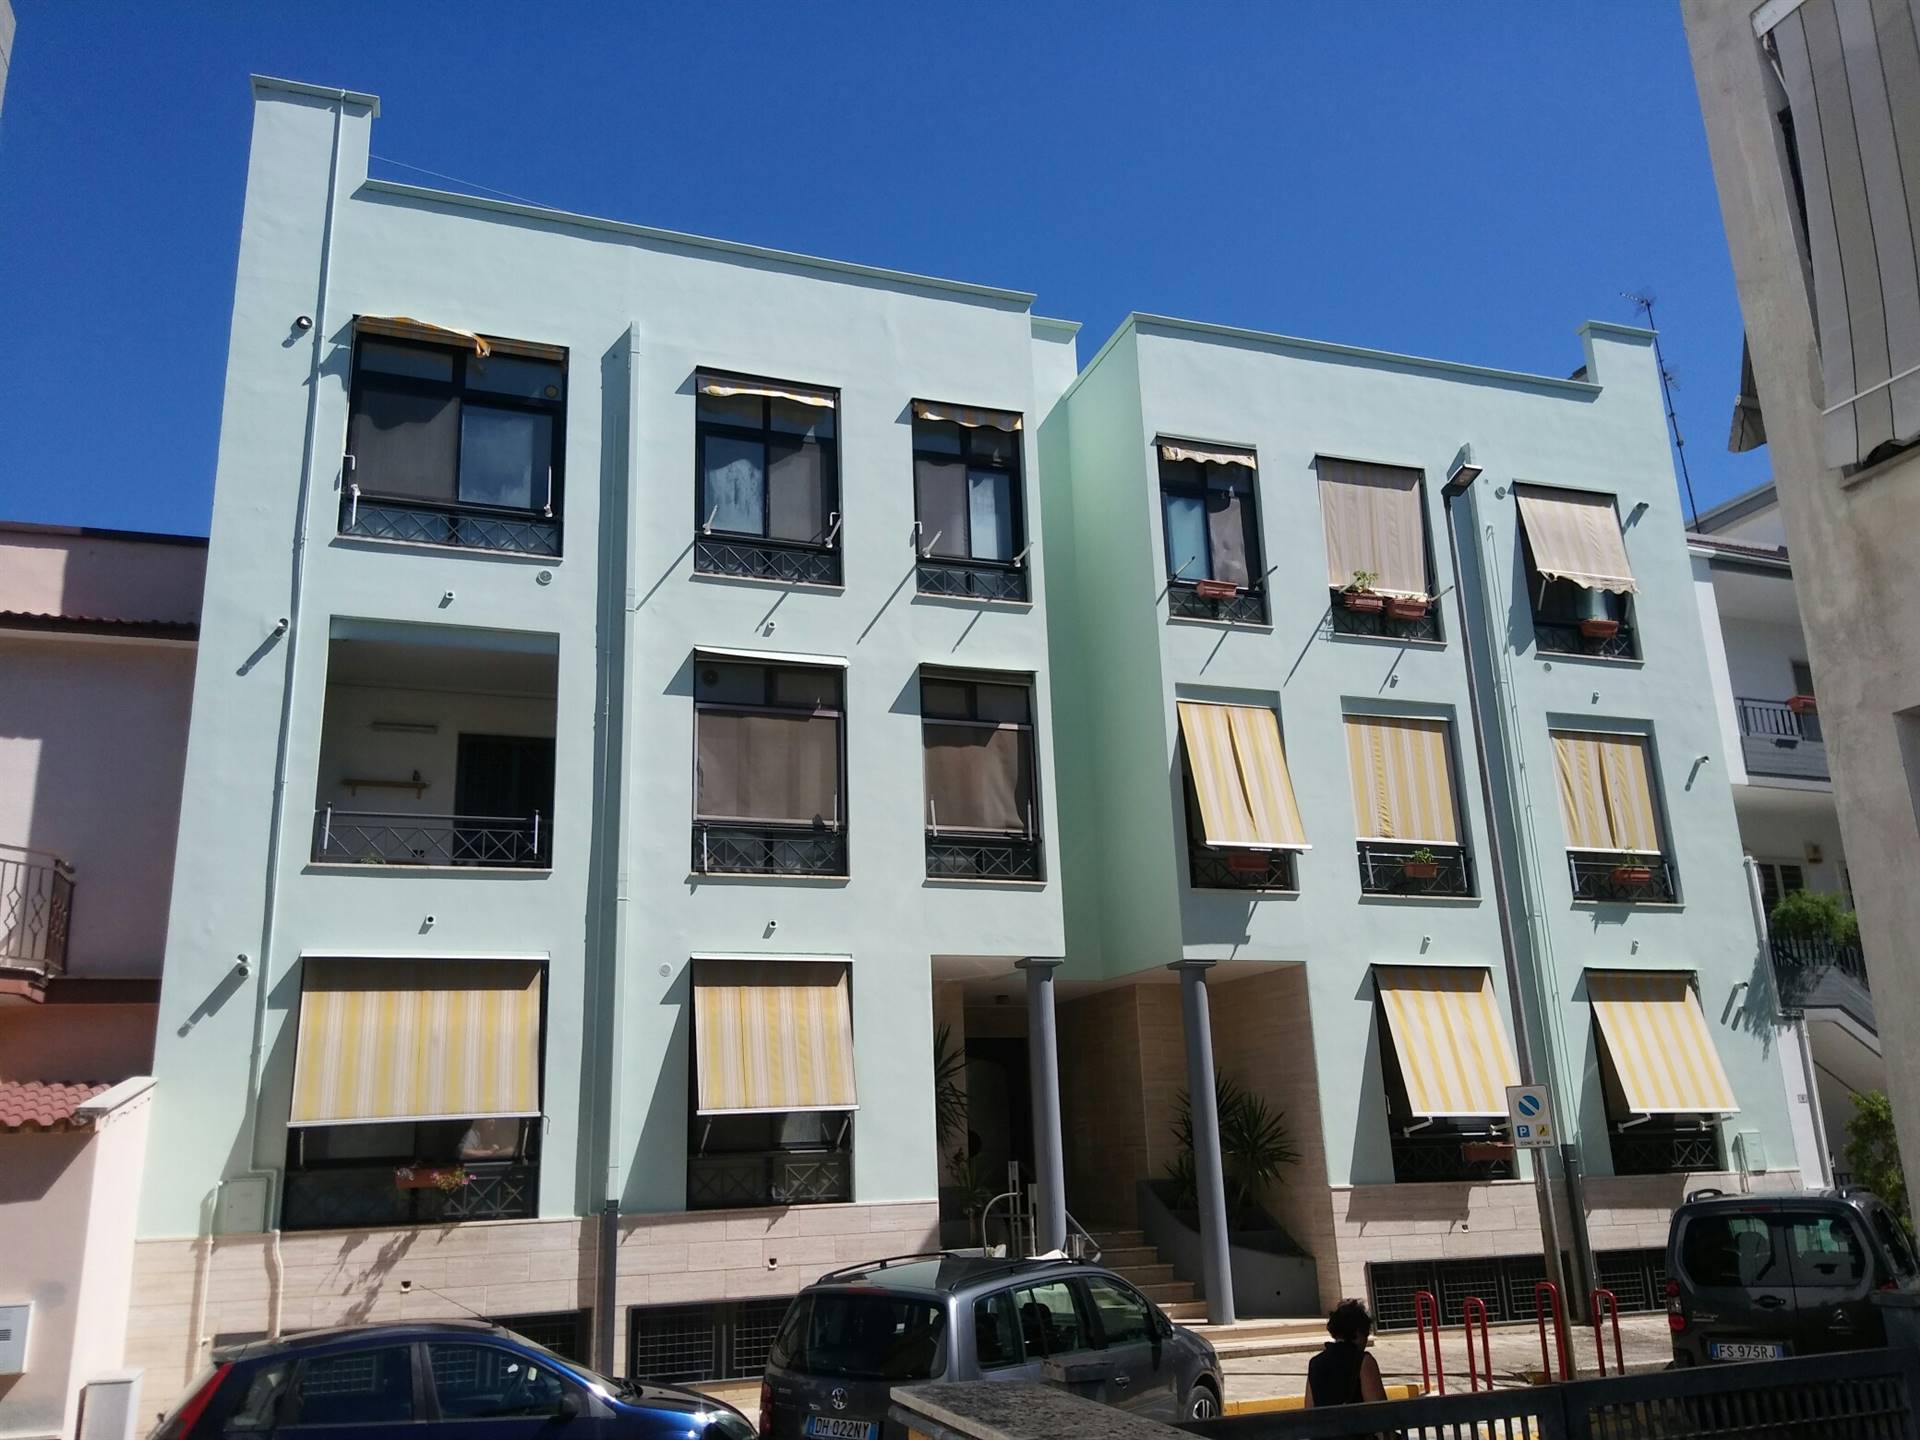 Appartamento in vendita a Palo del Colle, 3 locali, prezzo € 130.000 | CambioCasa.it